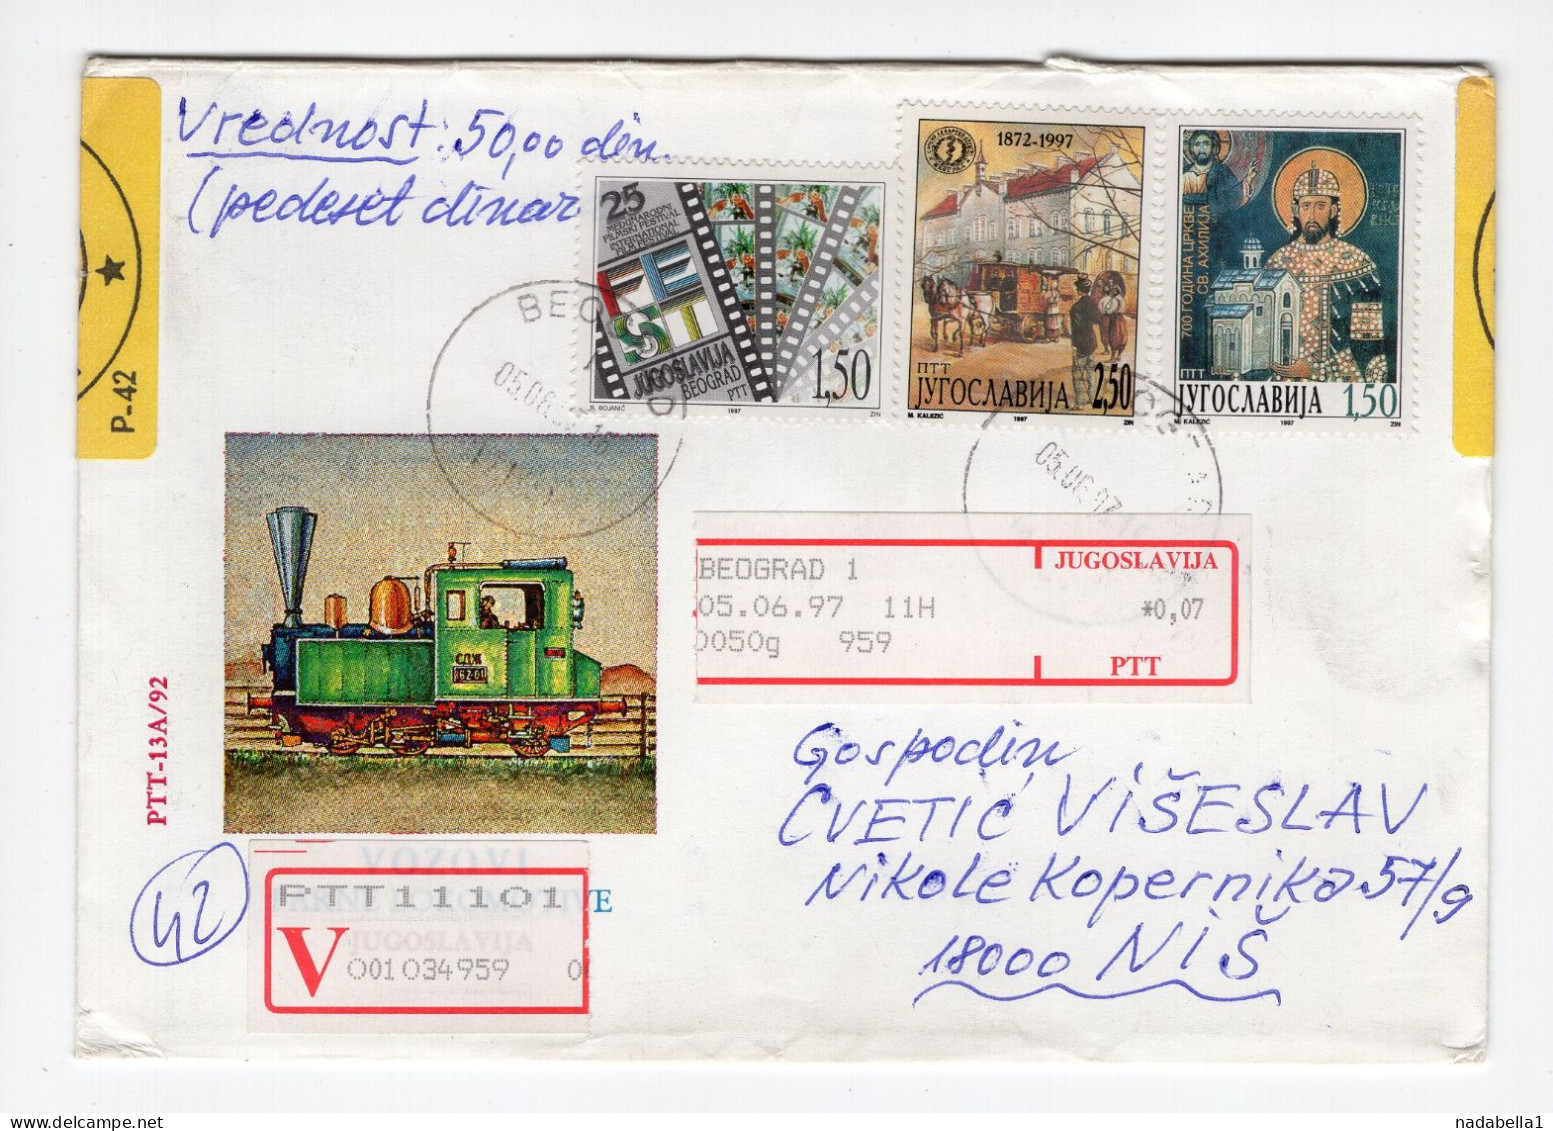 1997. YUGOSLAVIA,SERBIA,BELGRADE TO NIS,VALUE COVER - Briefe U. Dokumente